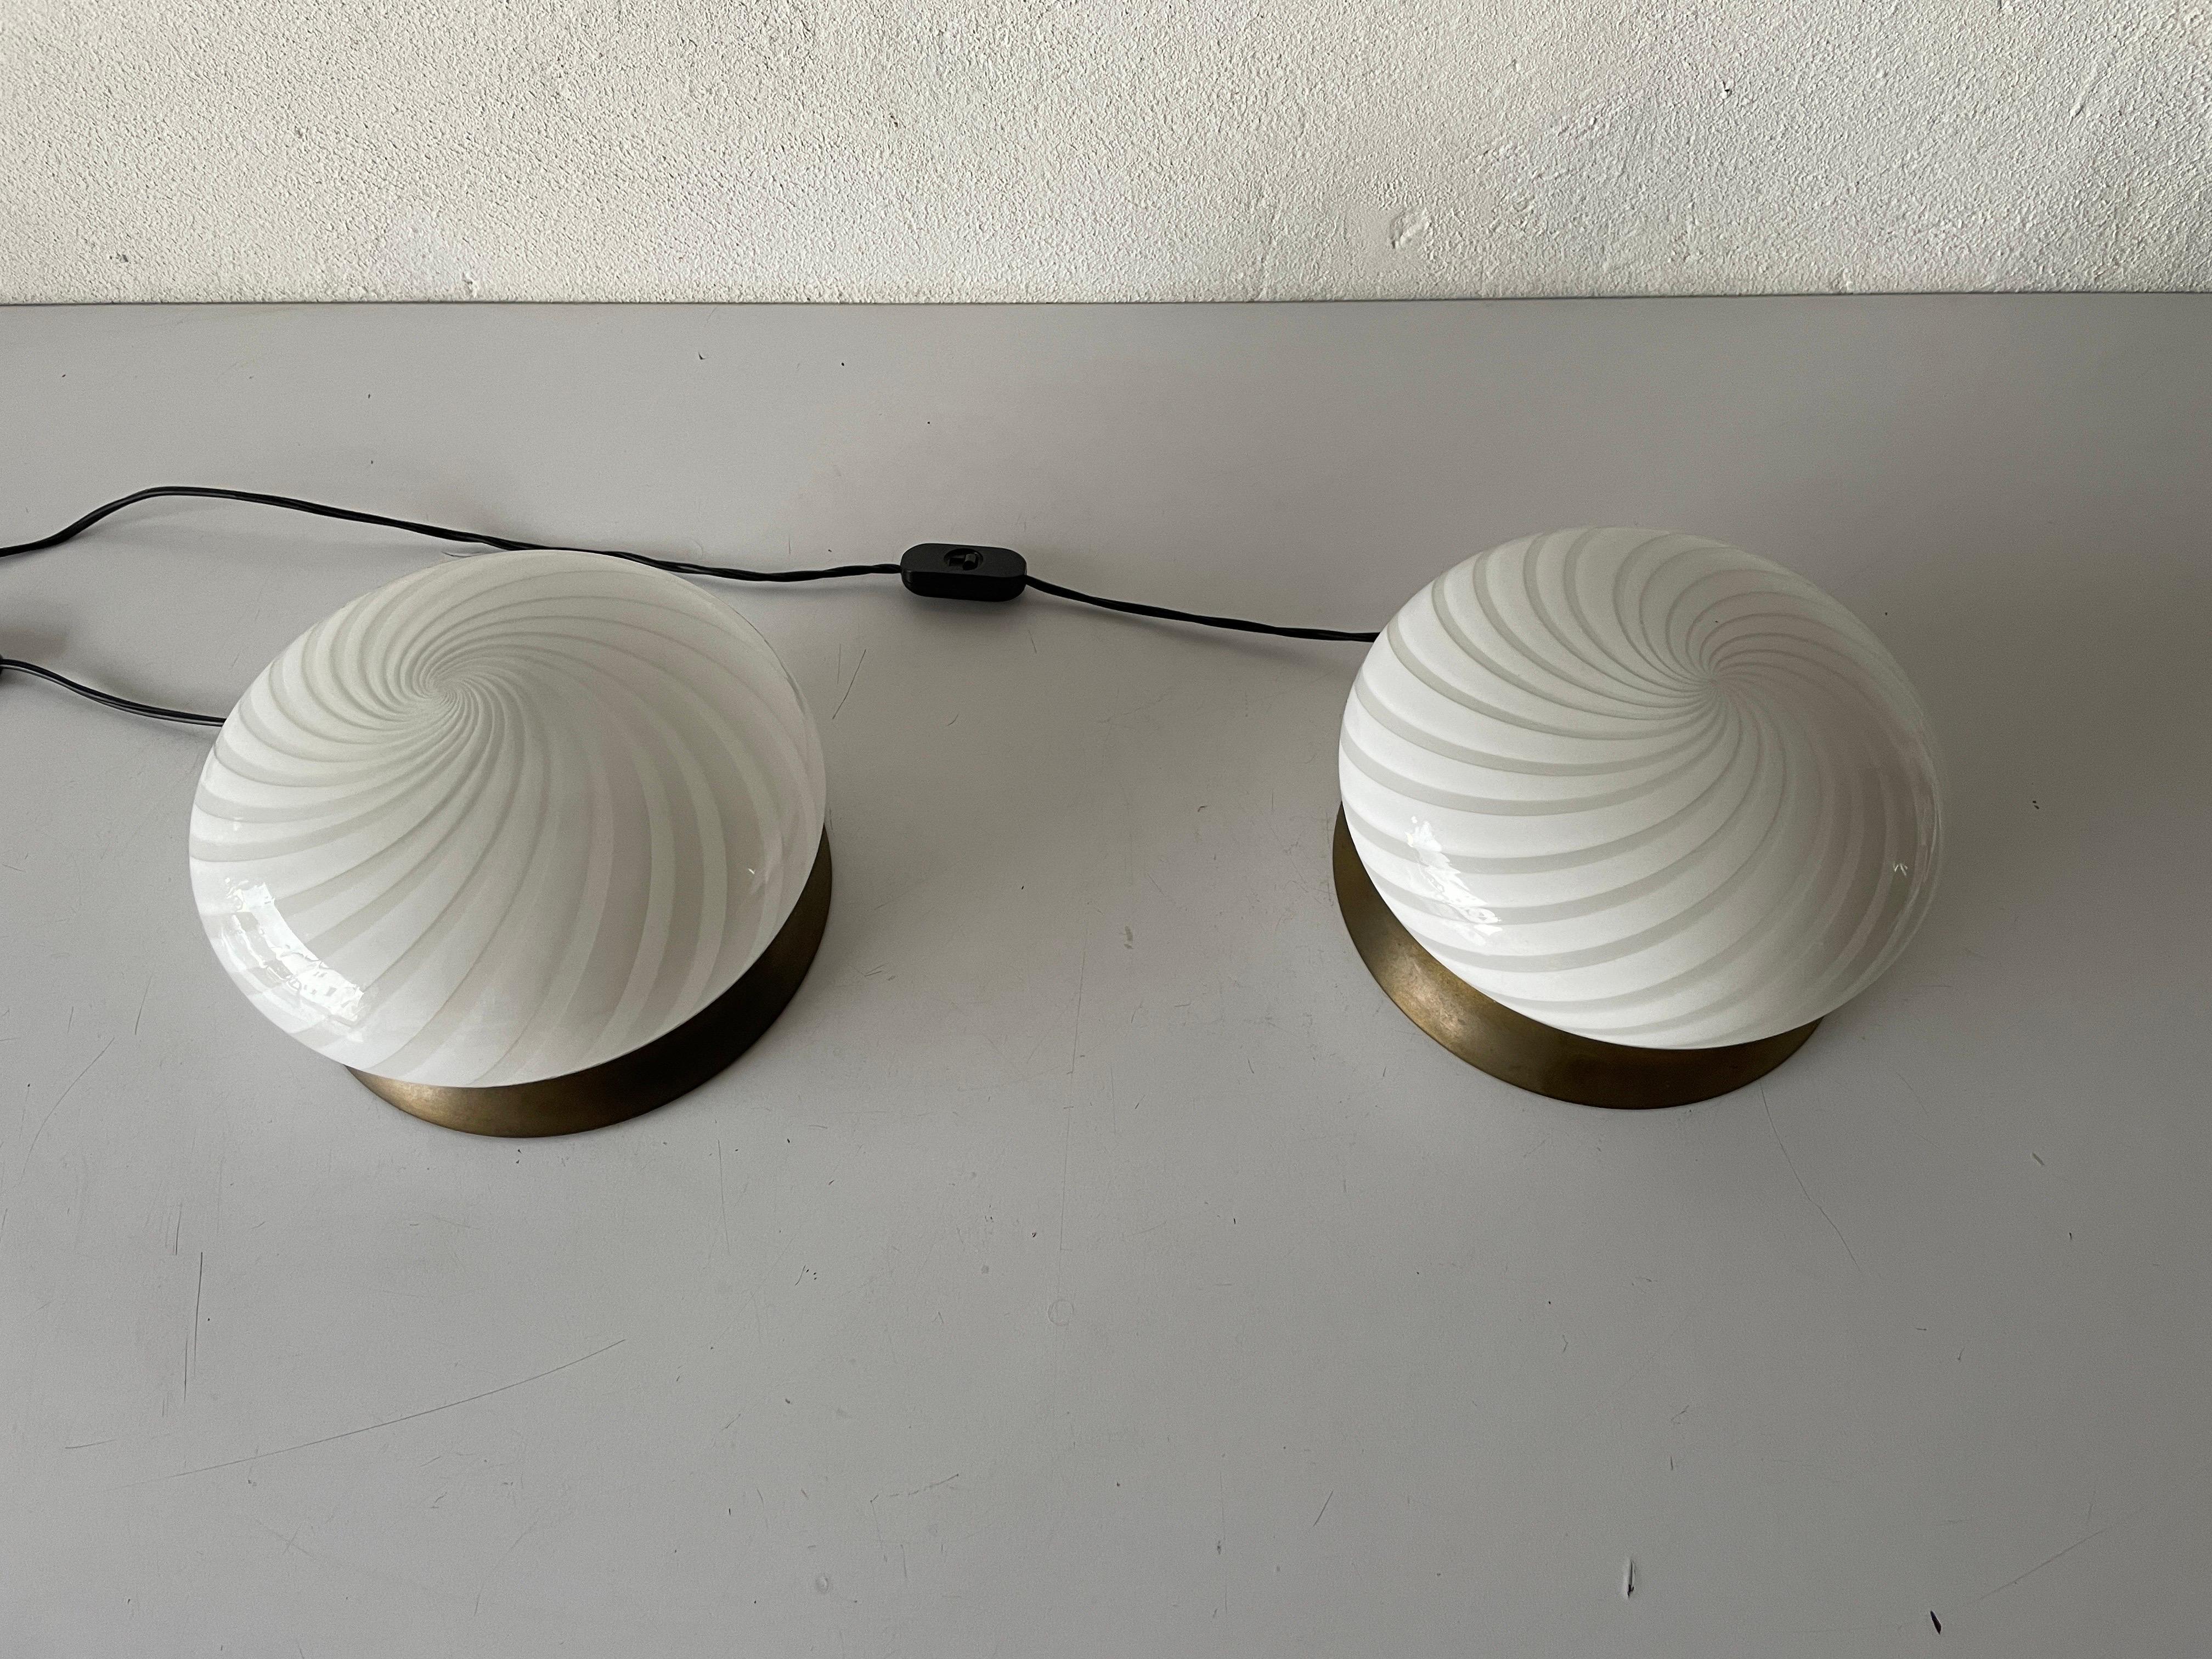 Italian Pair of Table Lamps by Milano-Industria Lampadari Lamter, 1950s, Italy For Sale